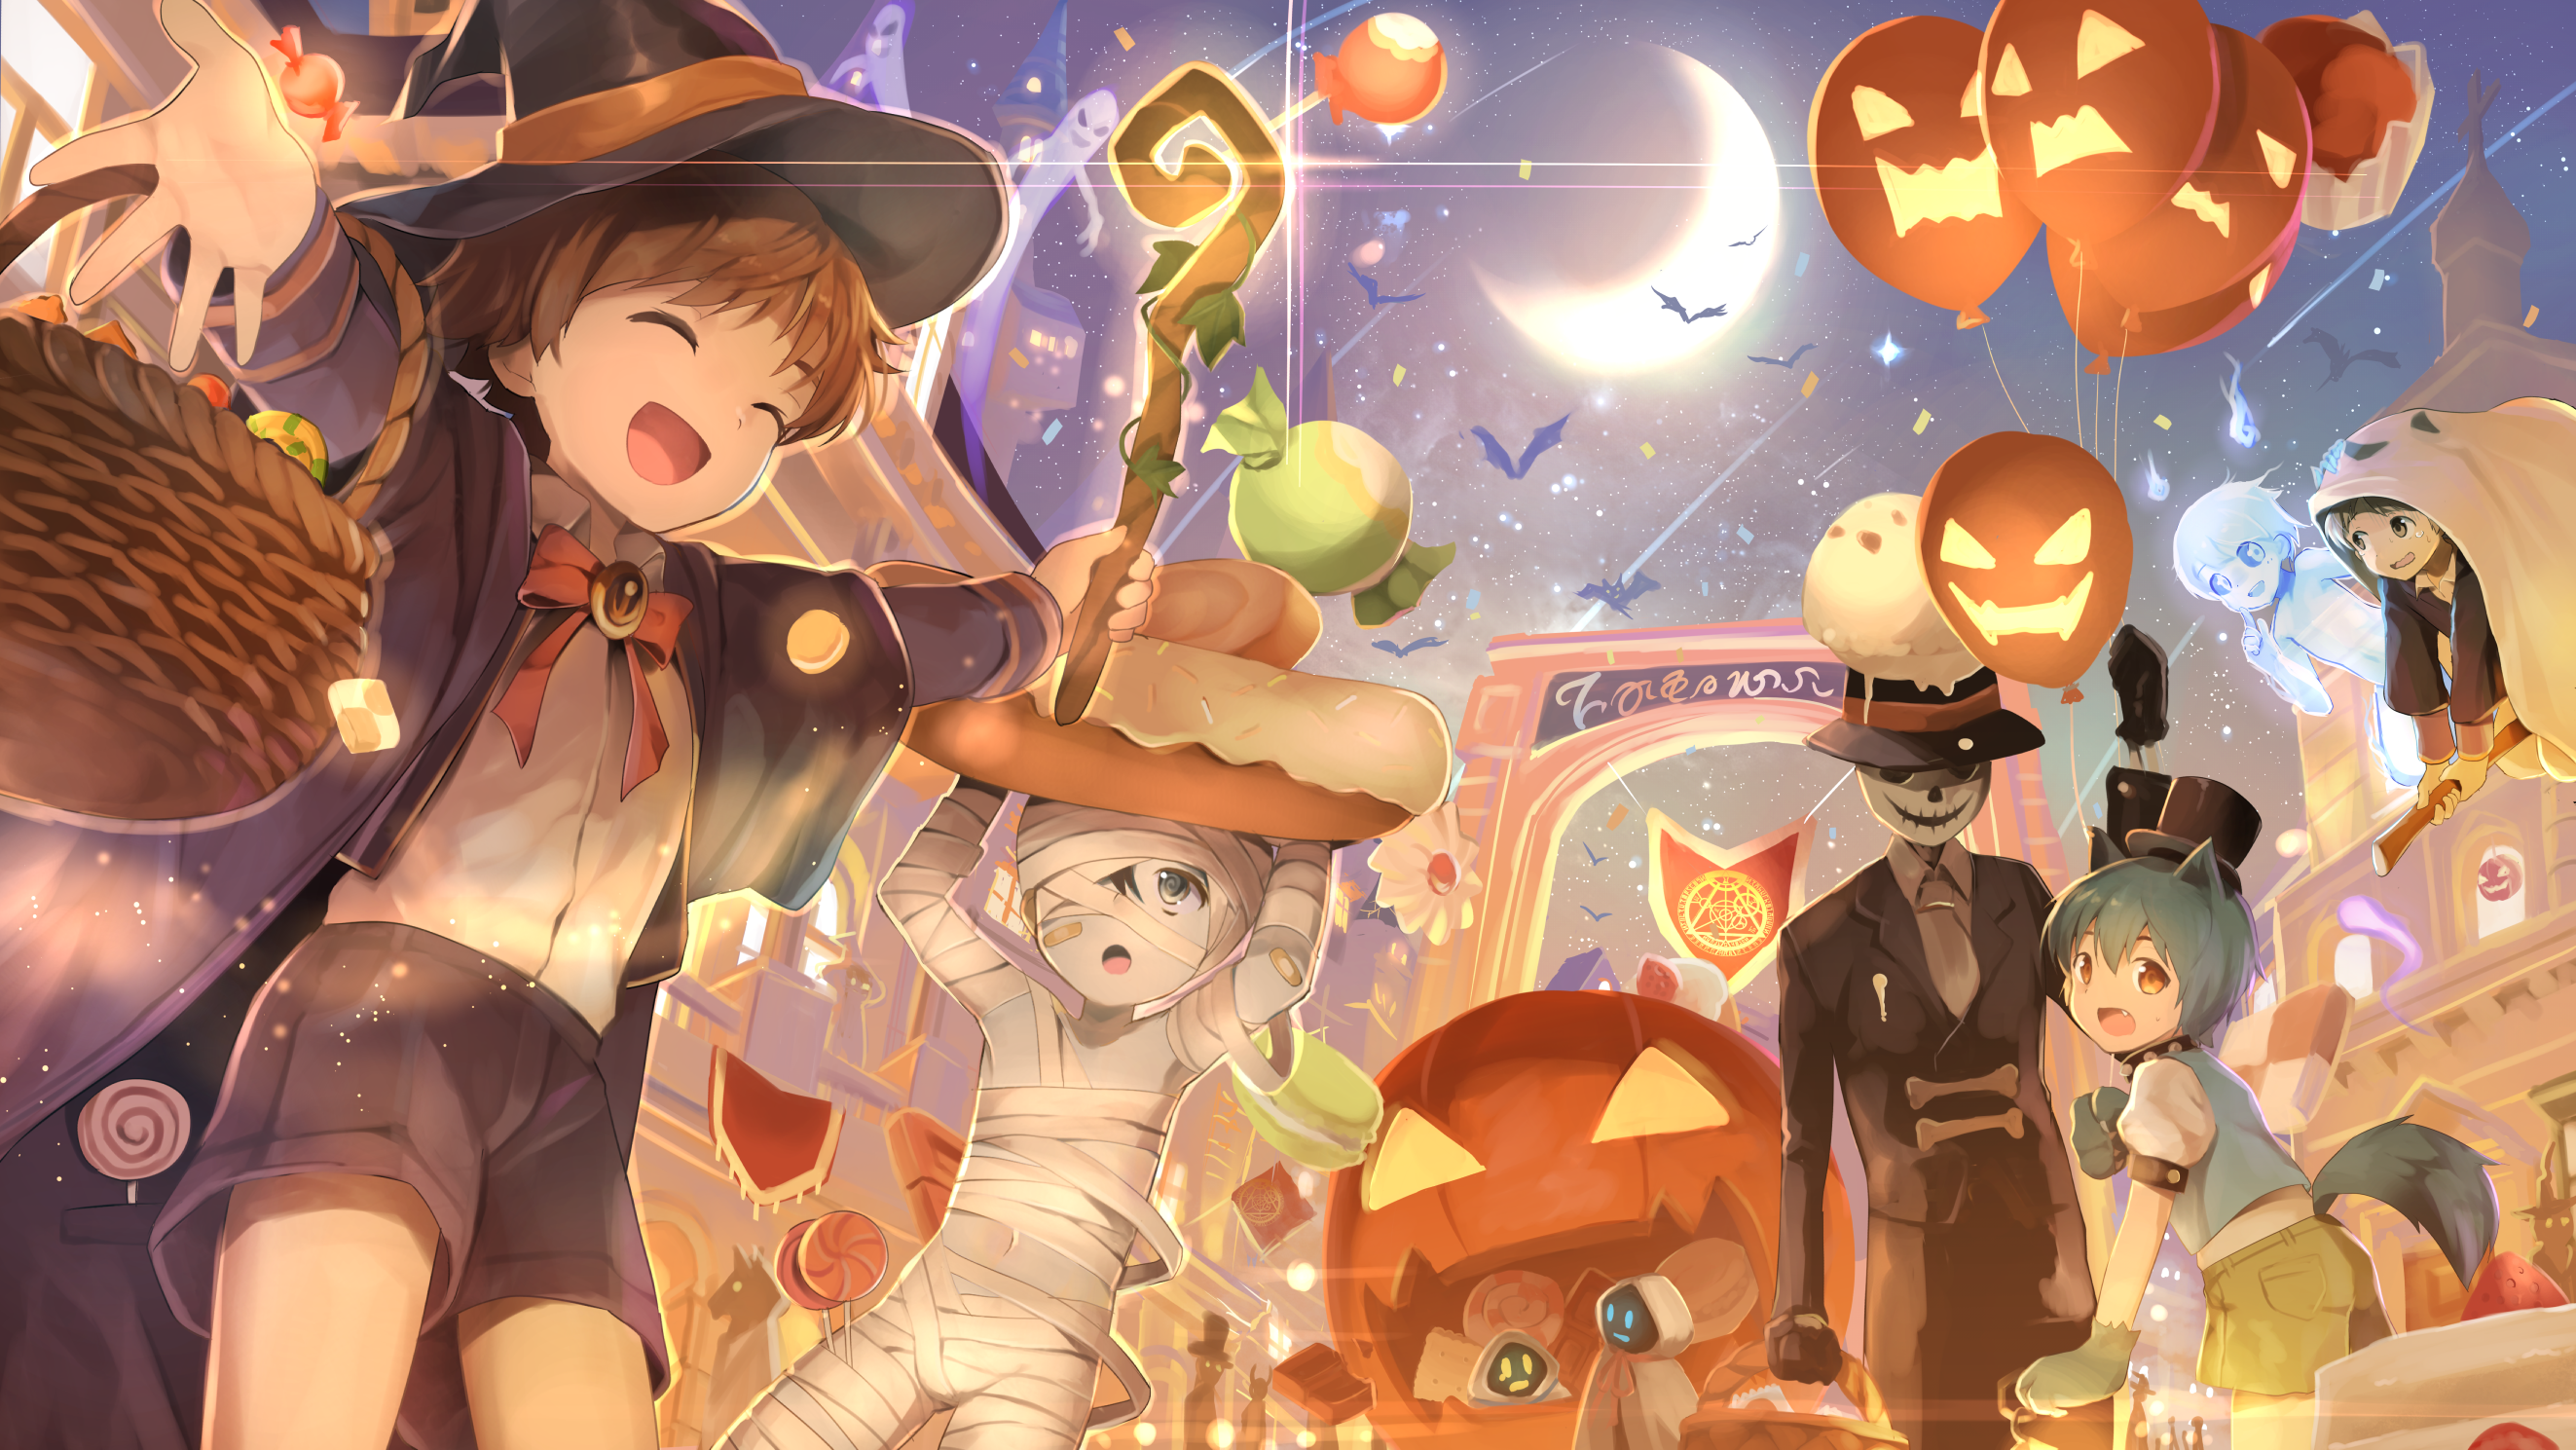 Boku no hero academia - Halloween party